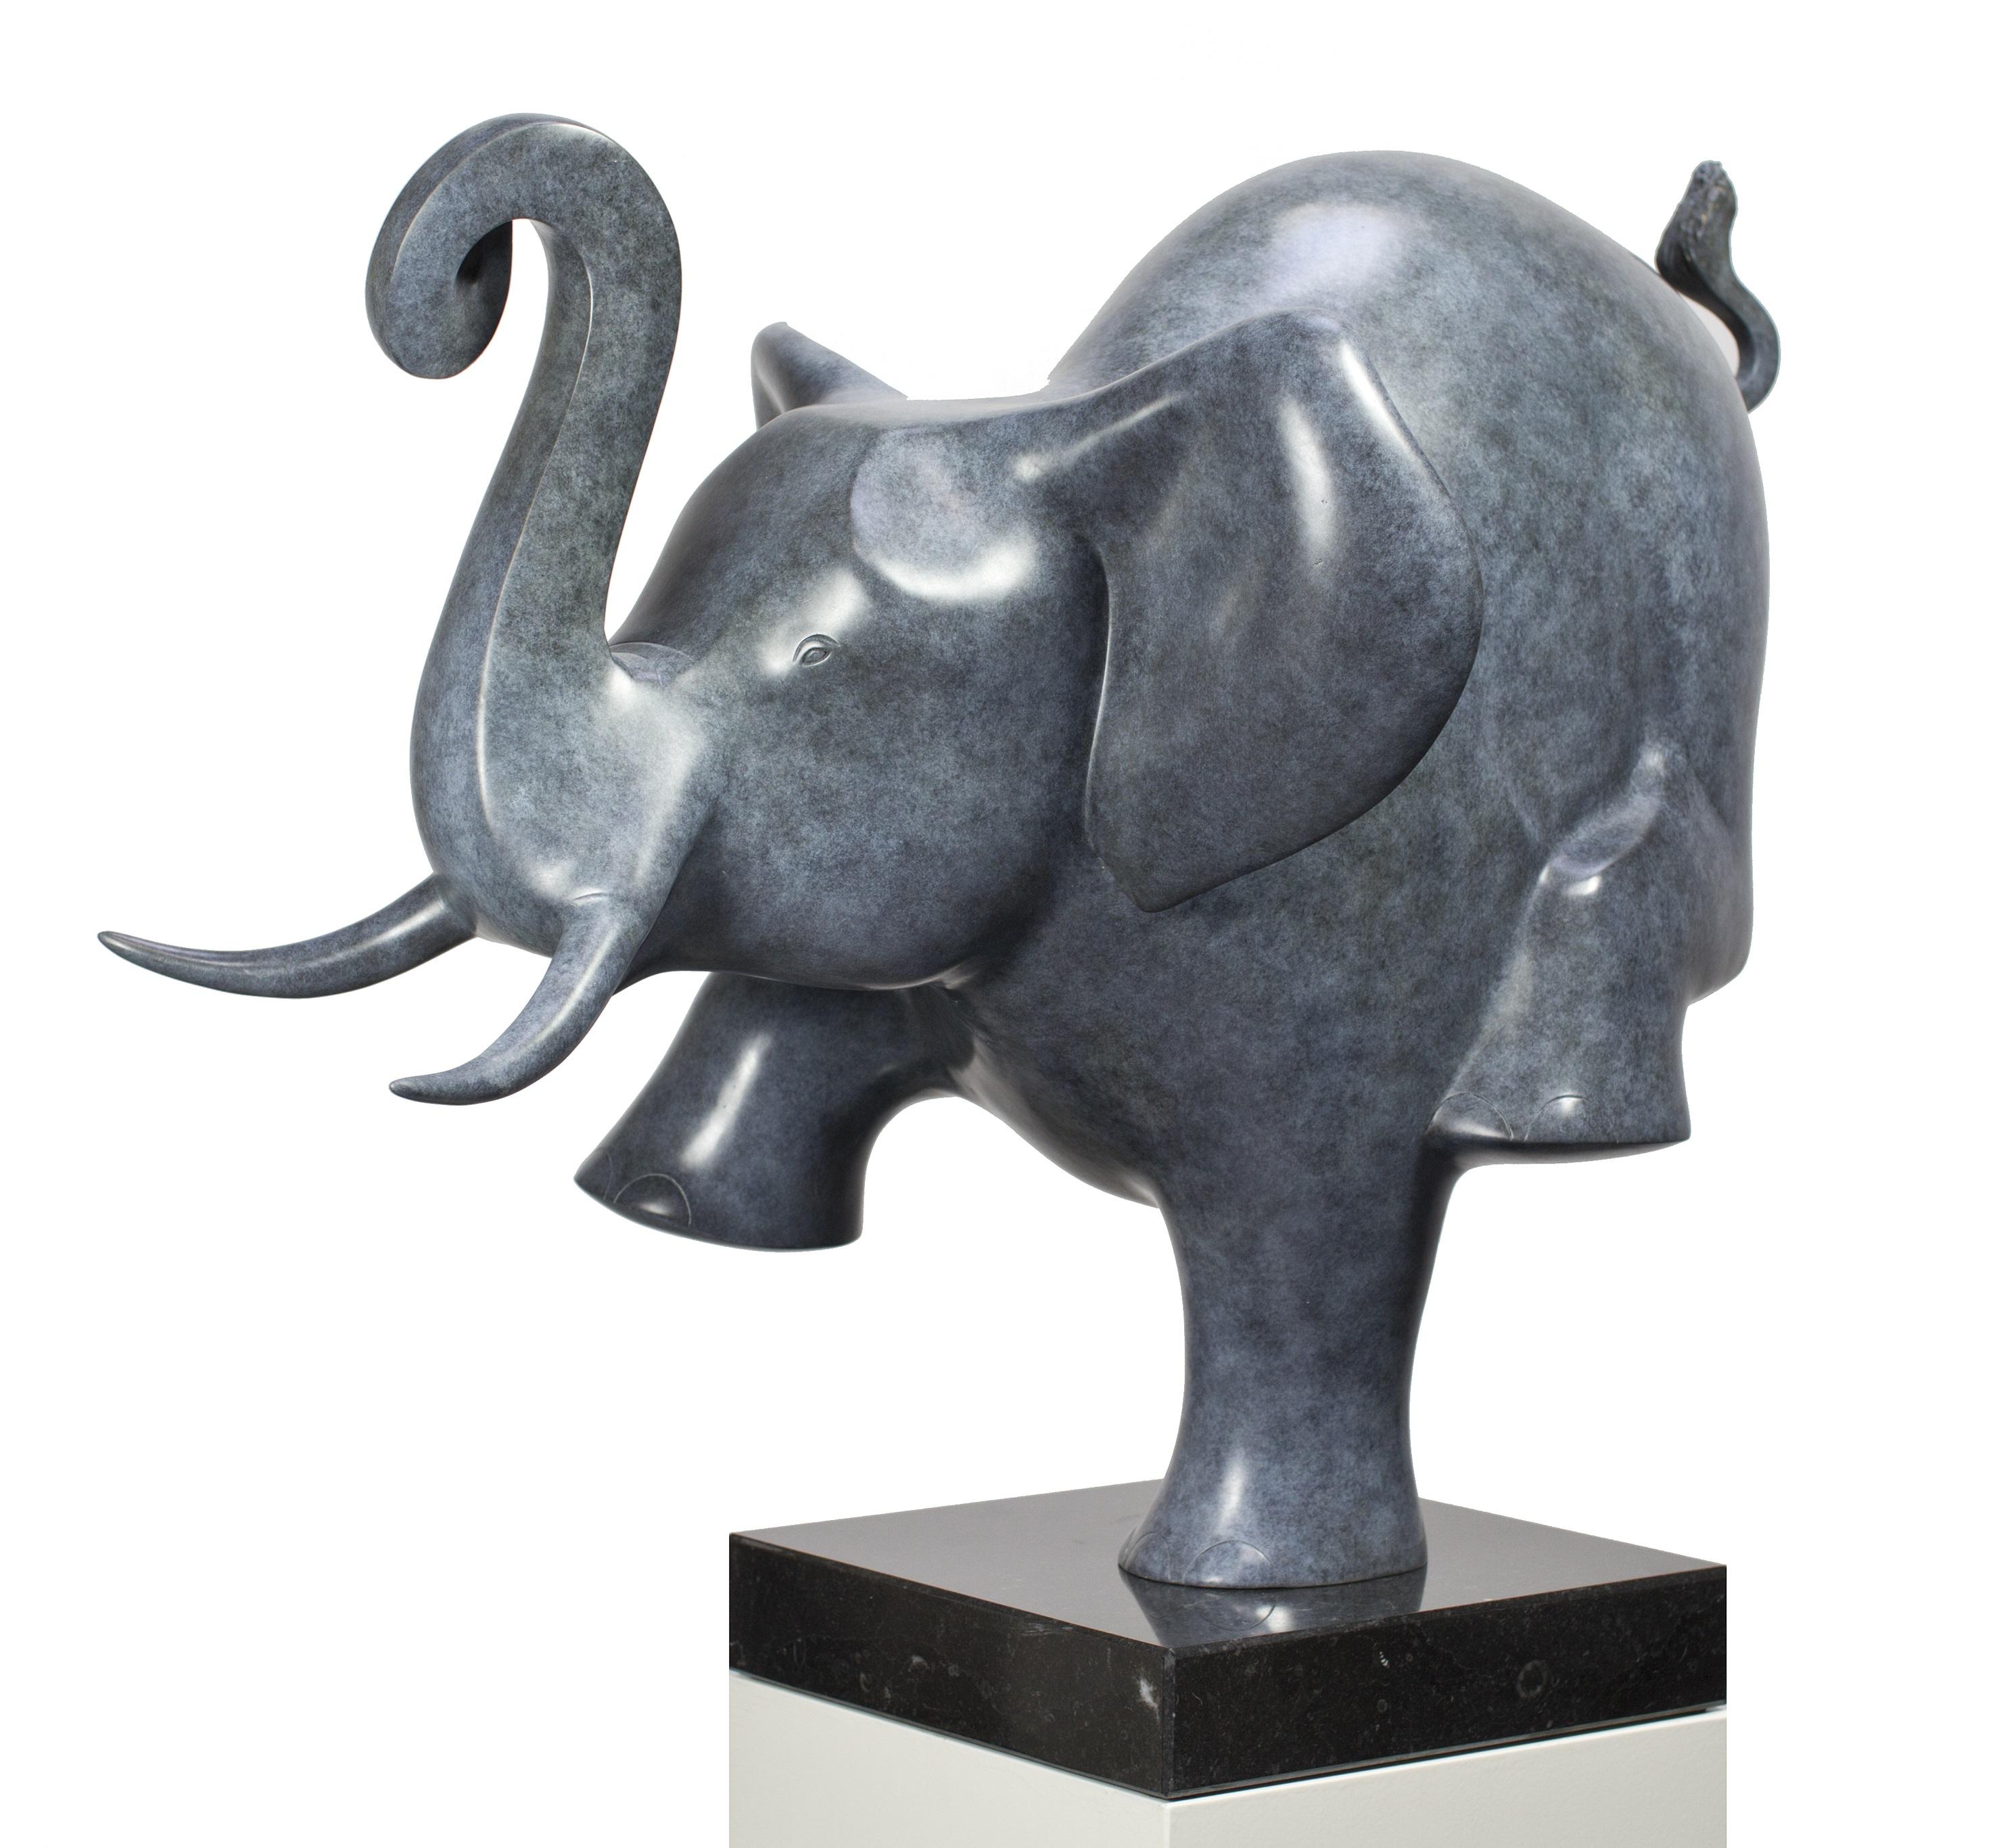 Evert den Hartog Figurative Sculpture - Dansende Olifant no. 2 Dancing Elephant Bronze Sculpture In Stock 